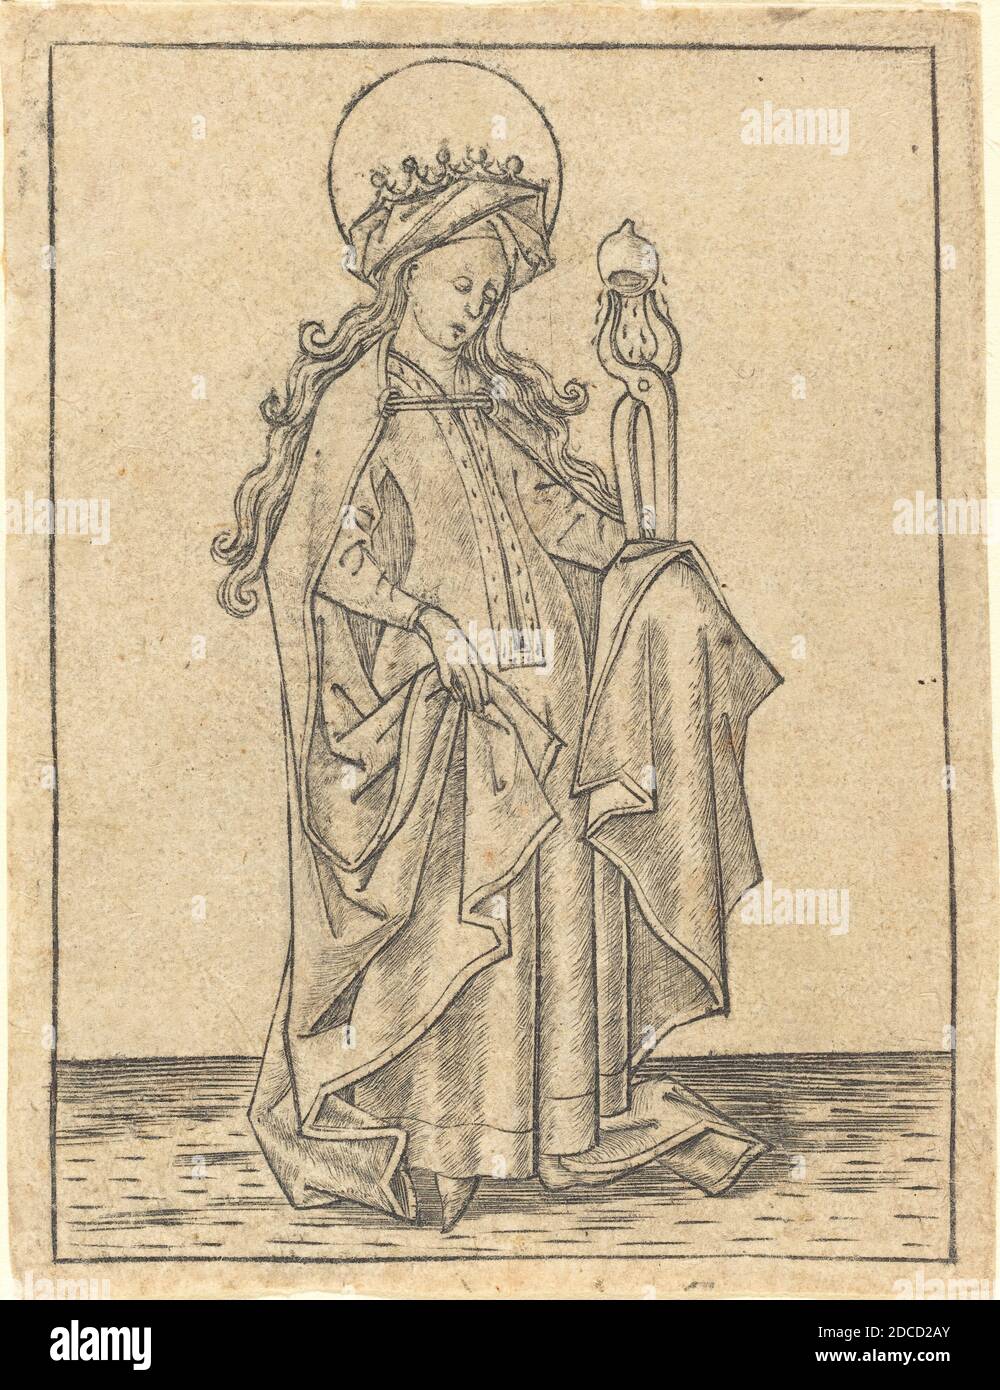 Israhel van Meckenem, (artist), German, c. 1445 - 1503, Saint Agatha, c. 1465, engraving Stock Photo